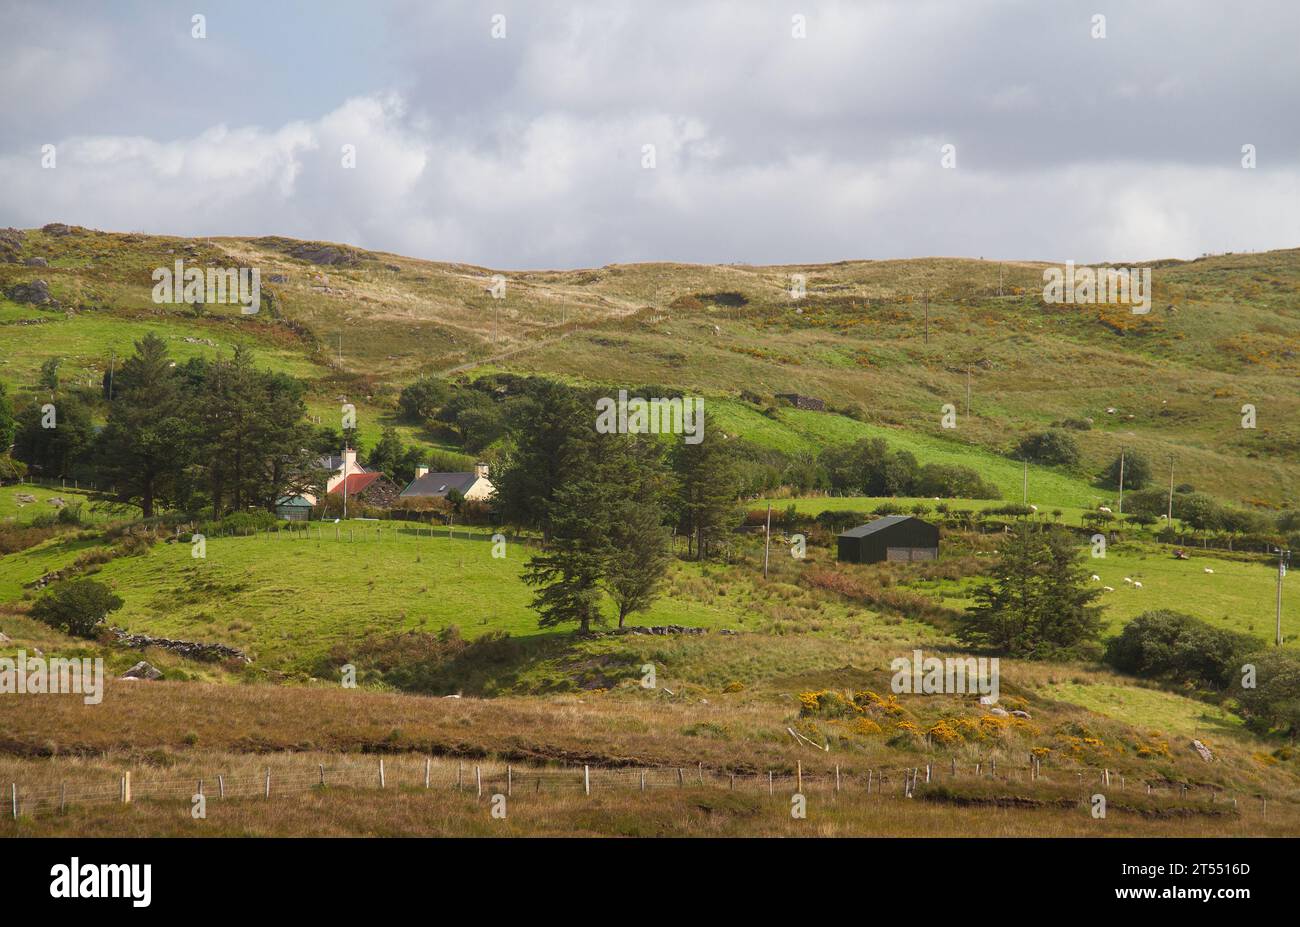 Paesaggio irlandese: Una fattoria bianca con prato in mezzo alla brughiera con scopa fiorita sulle colline Foto Stock